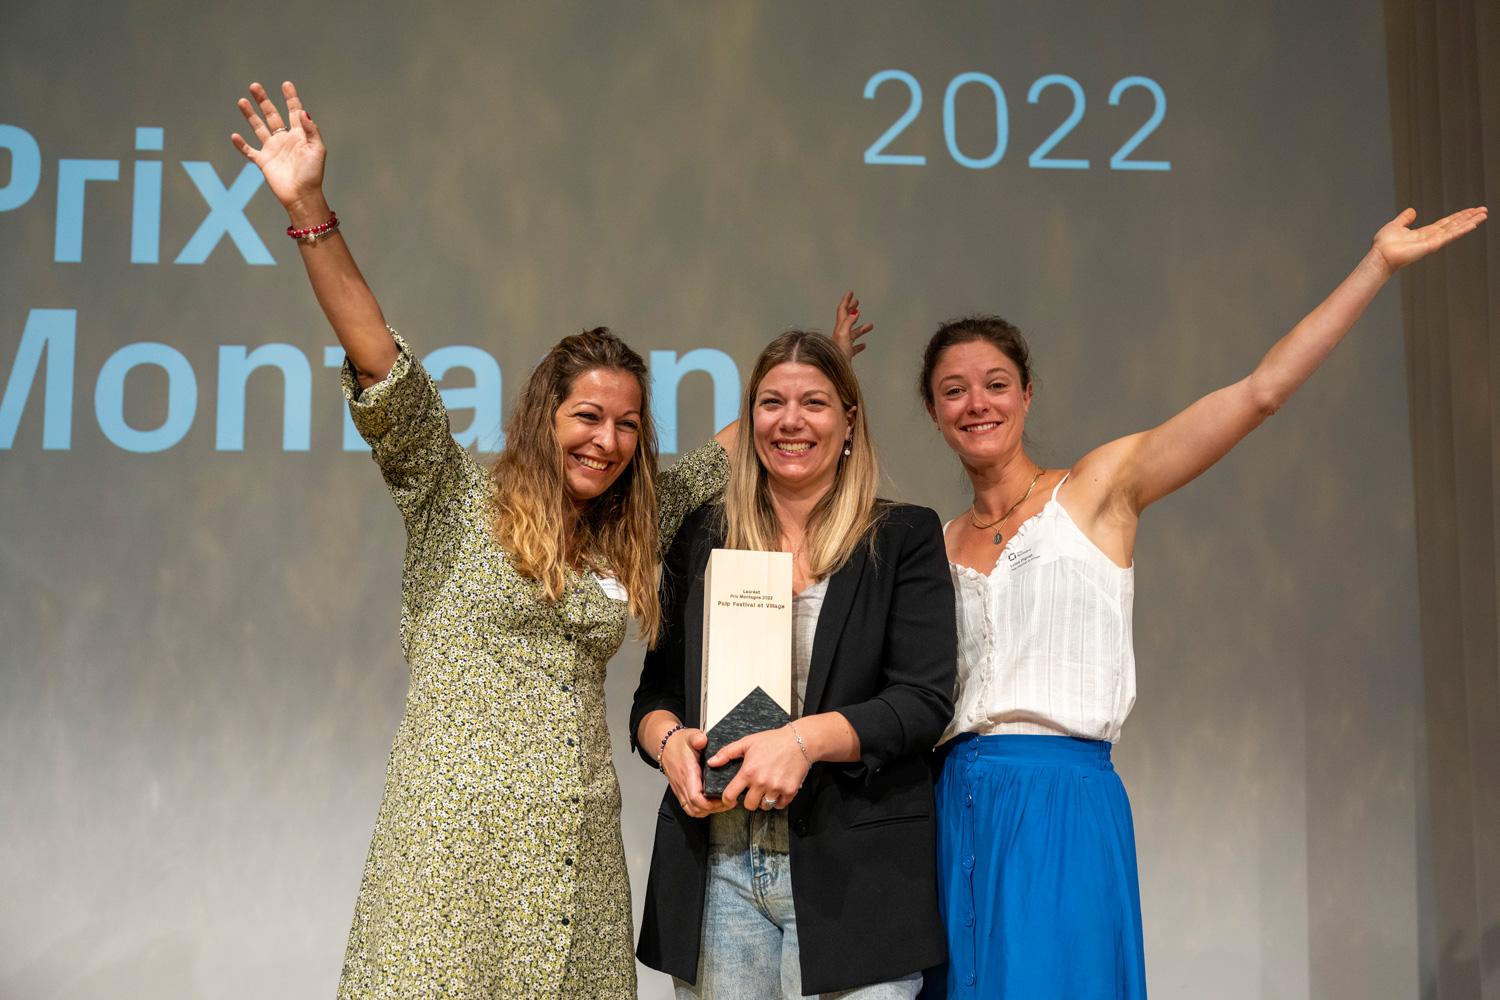 Begeisterte Gewinner: Das Team von Palp Festival et Village feiert den Gewinn des Prix Montagne 2022.